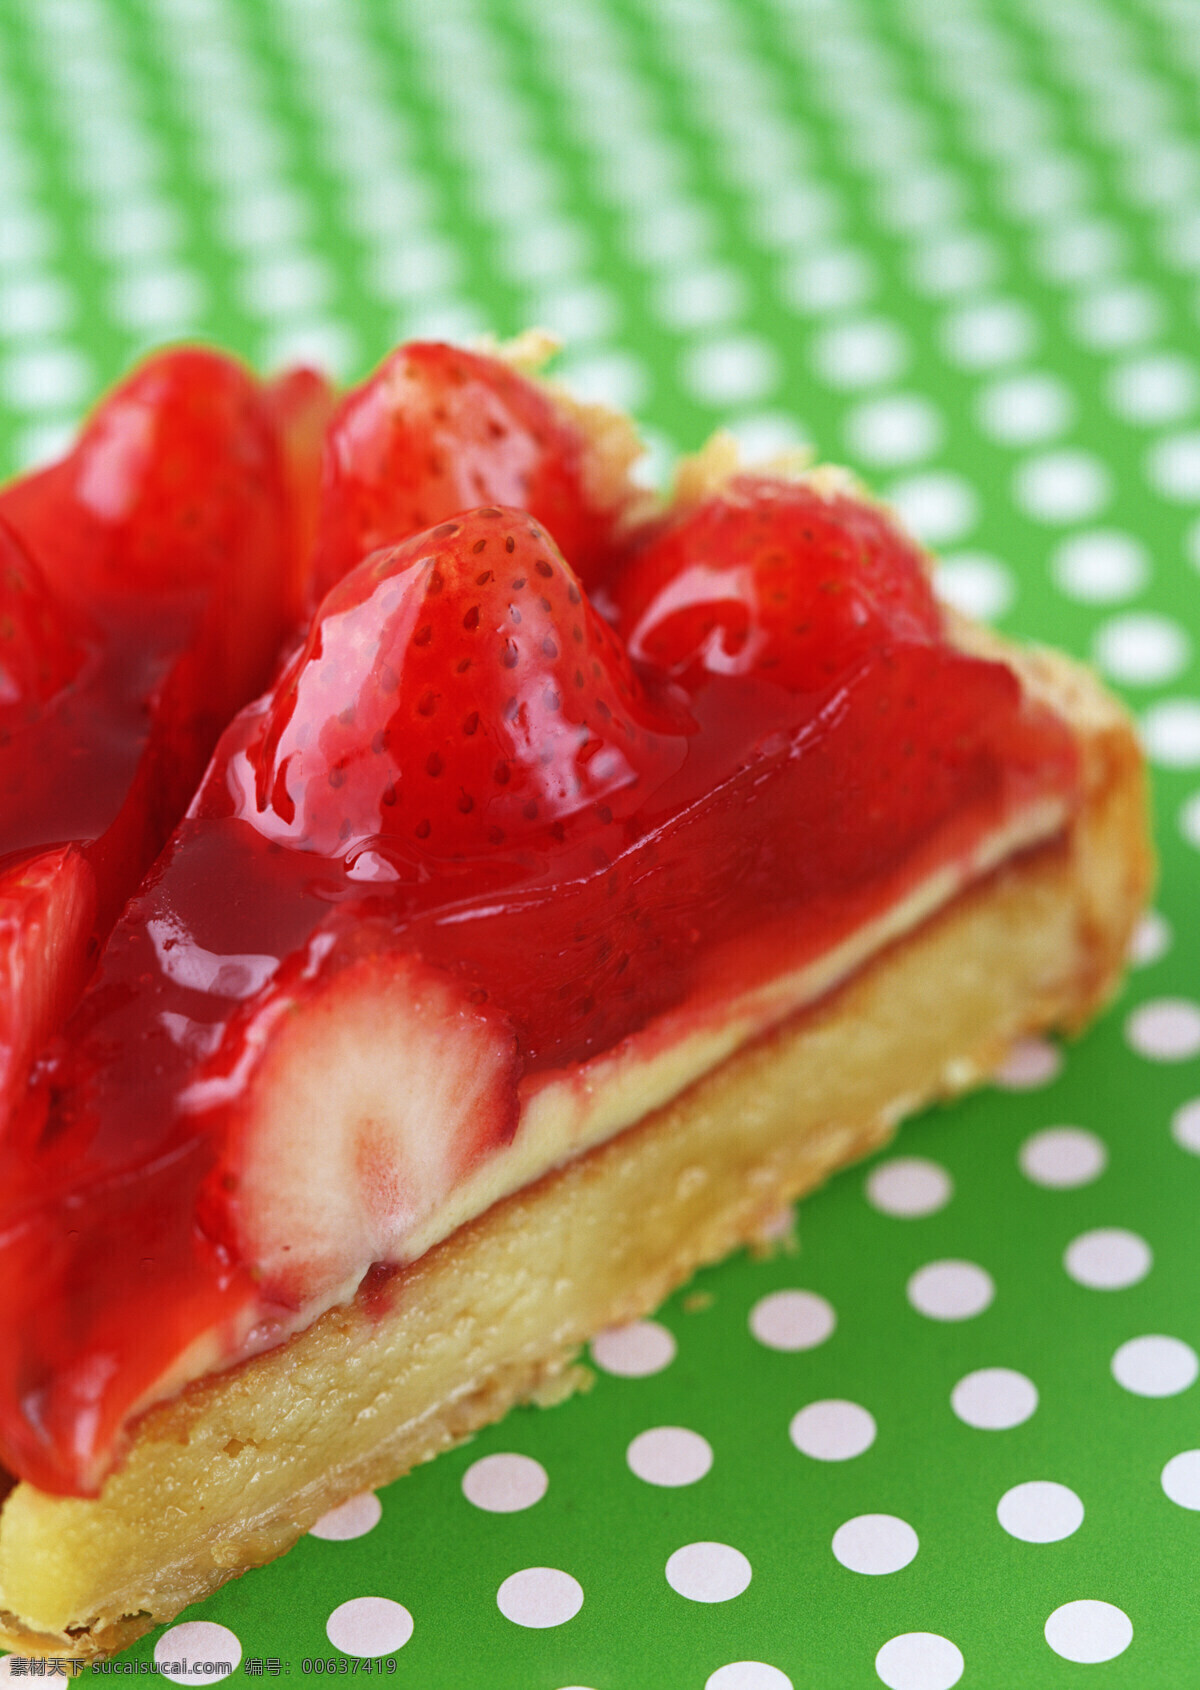 高清图片 蛋糕 慕斯蛋糕 水果蛋糕 草莓 草莓蛋糕 草莓派 手工 烘焙 甜品 甜点 餐饮美食